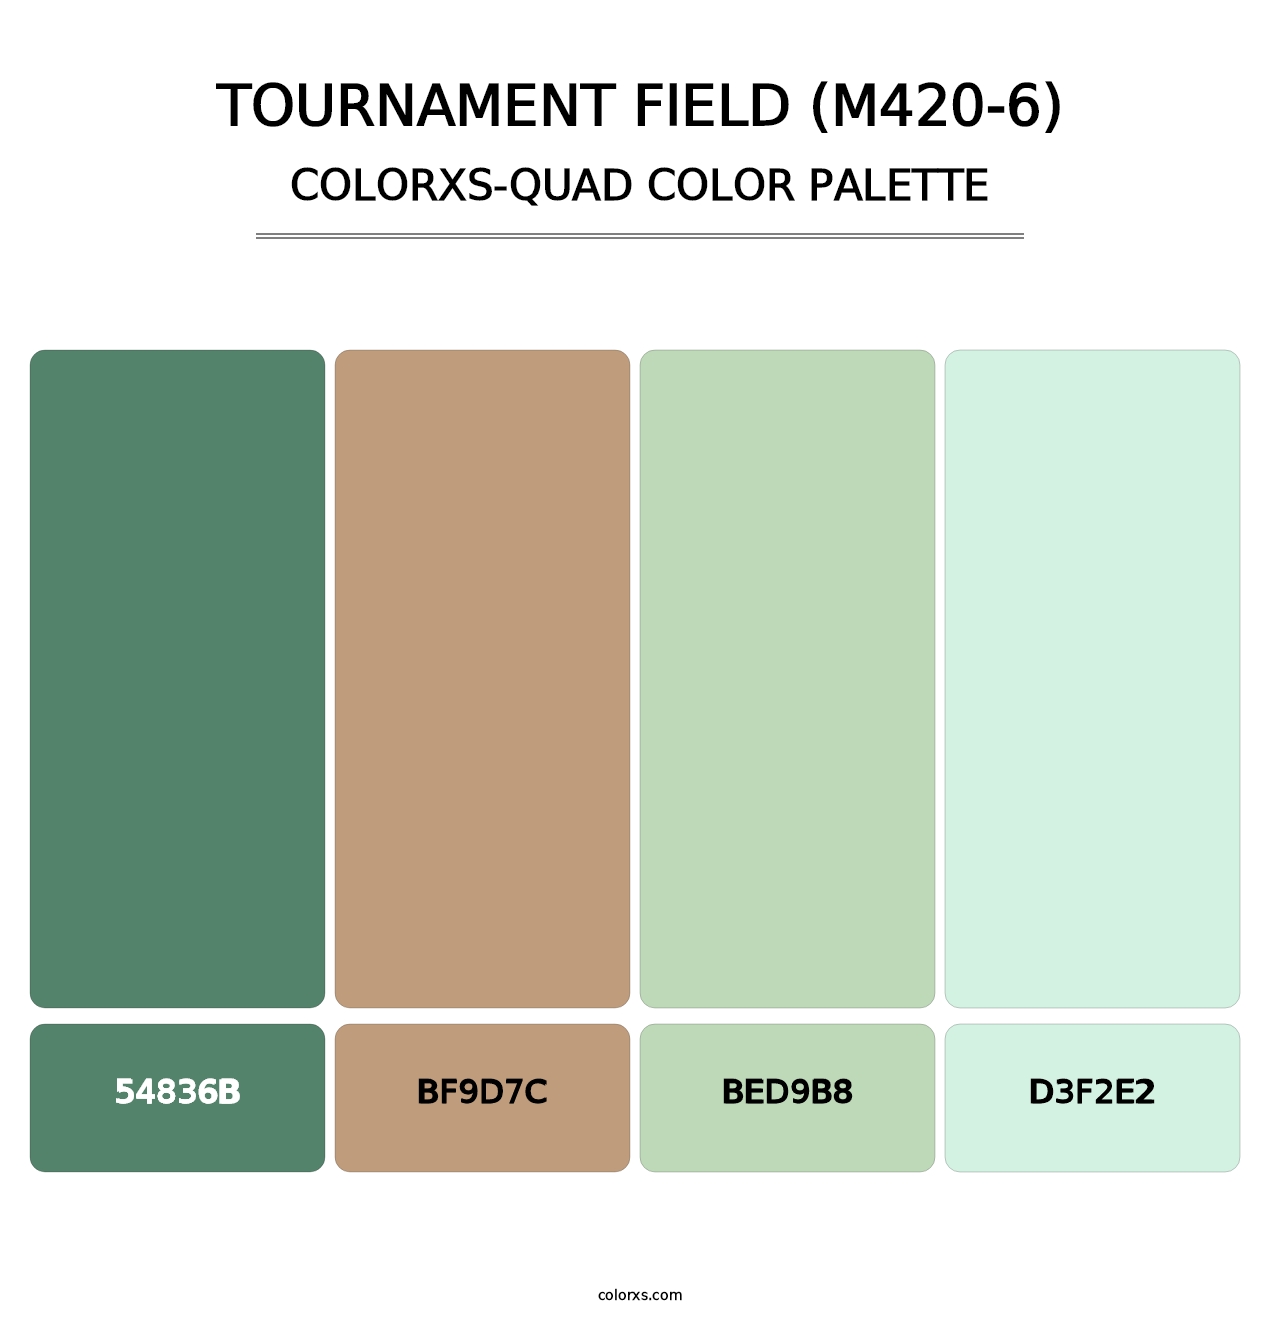 Tournament Field (M420-6) - Colorxs Quad Palette